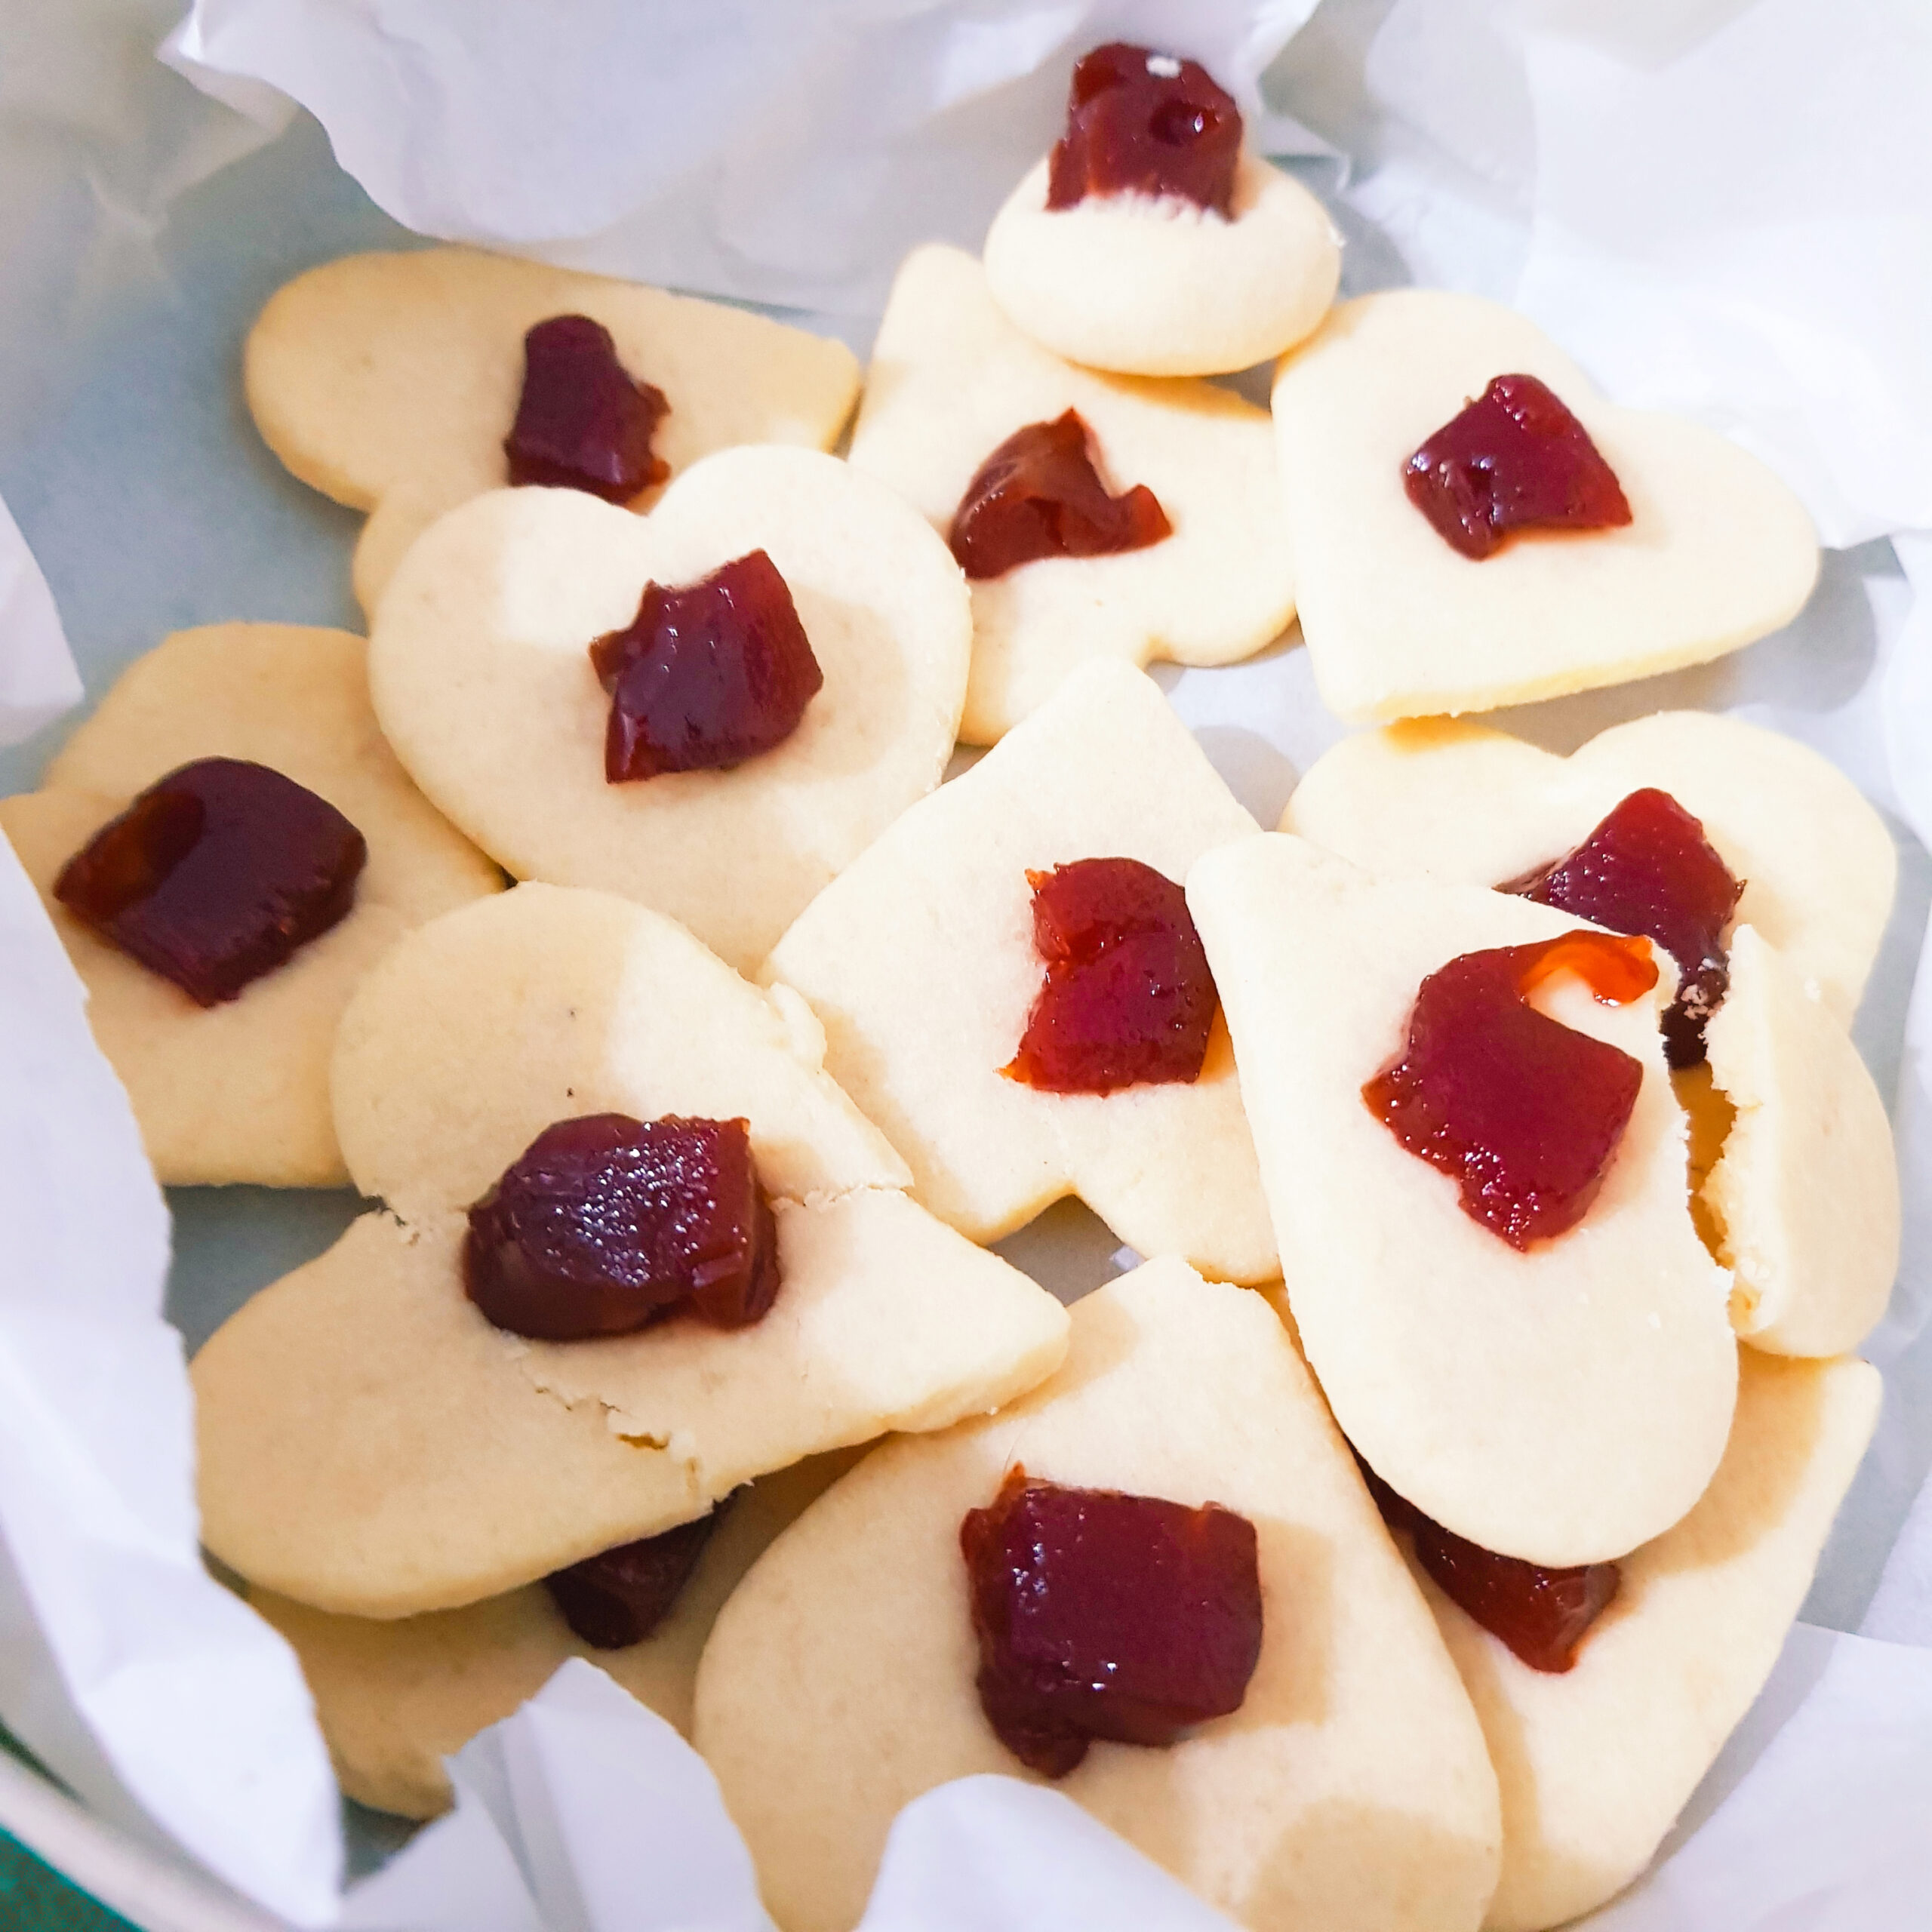 biscoitos cor creme em formato de coração, com uma bolinha vermelha de goiabada no centro